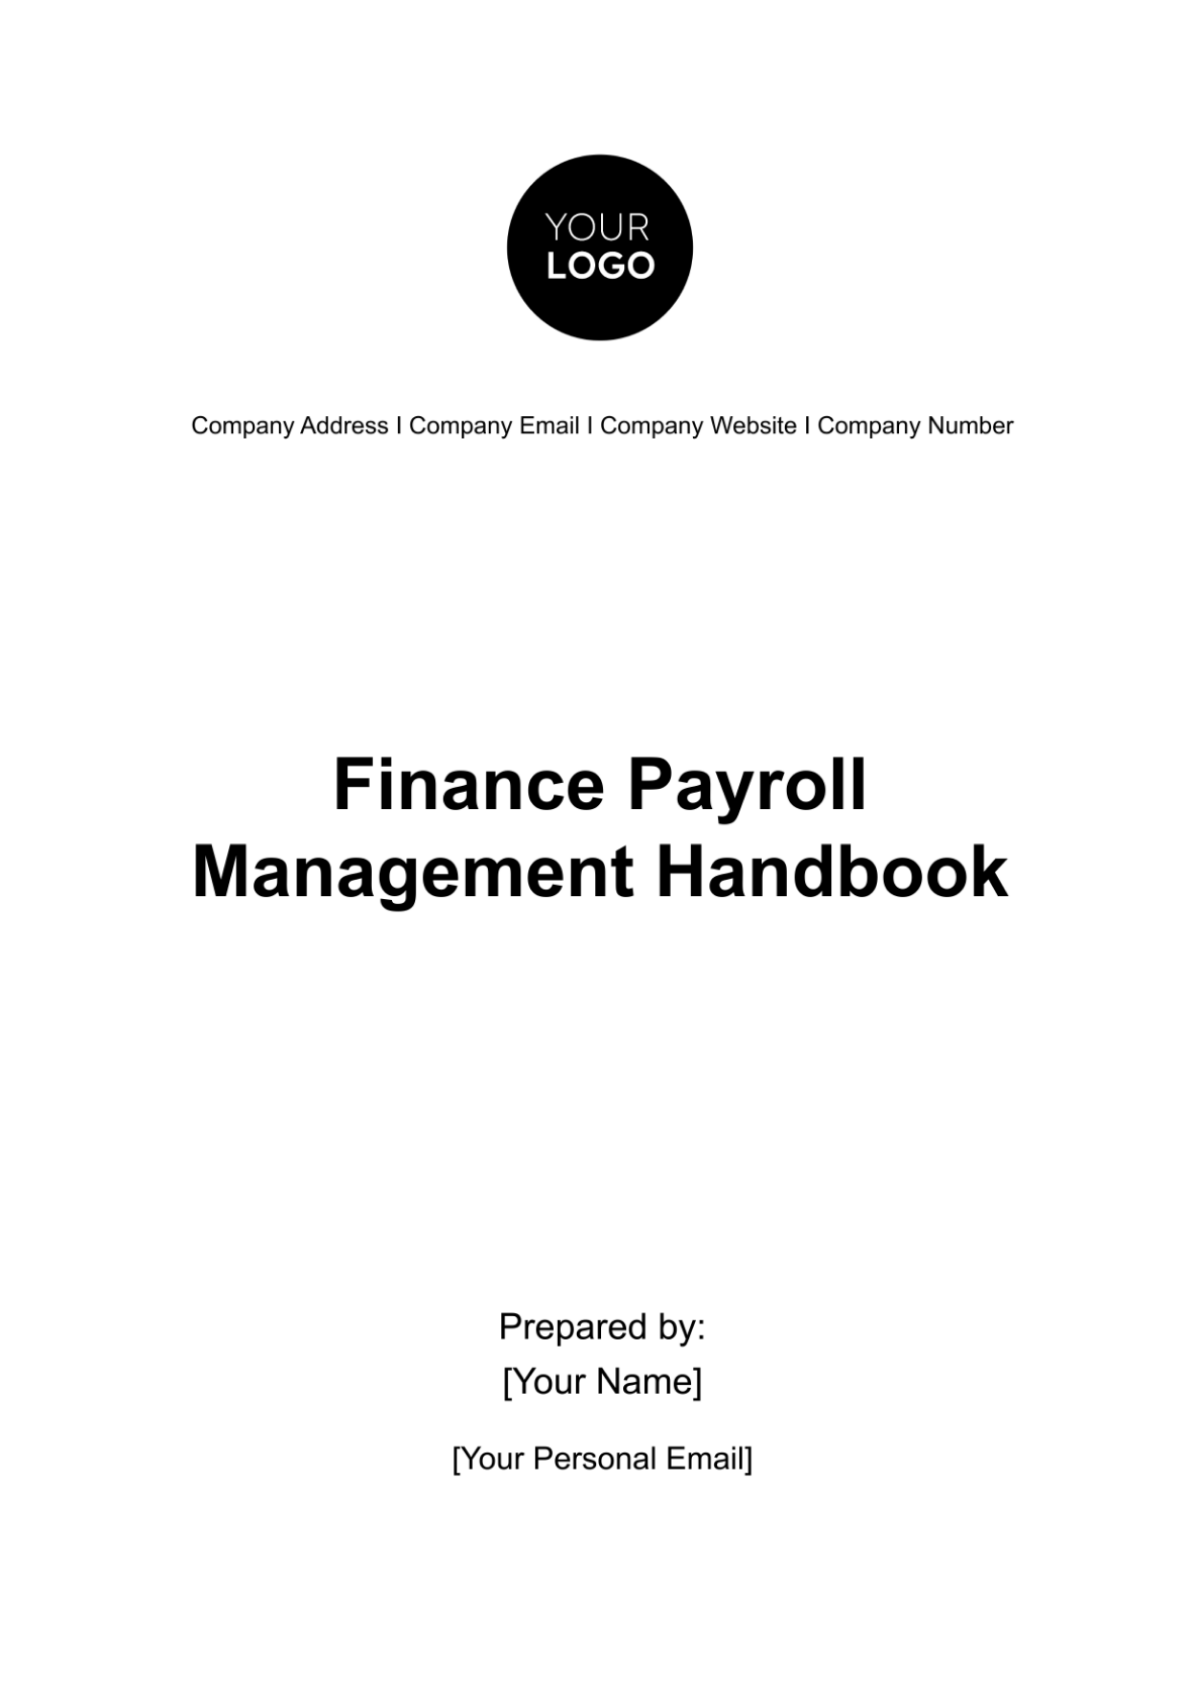 Finance Payroll Management Handbook Template